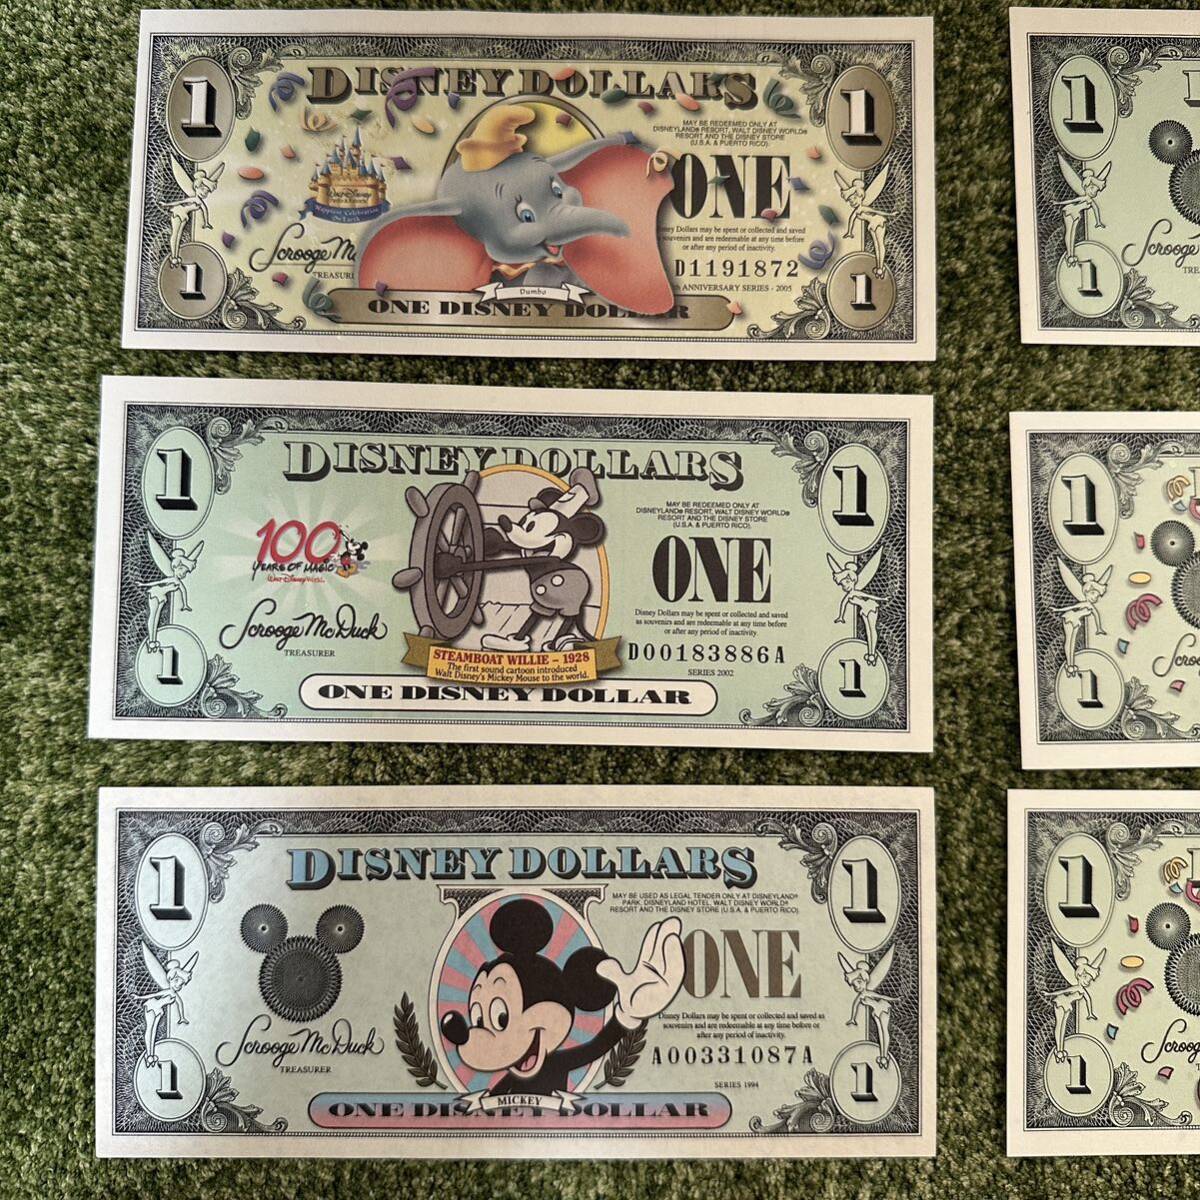  Disney dala-1 dollar Mickey note Disney dollar set 